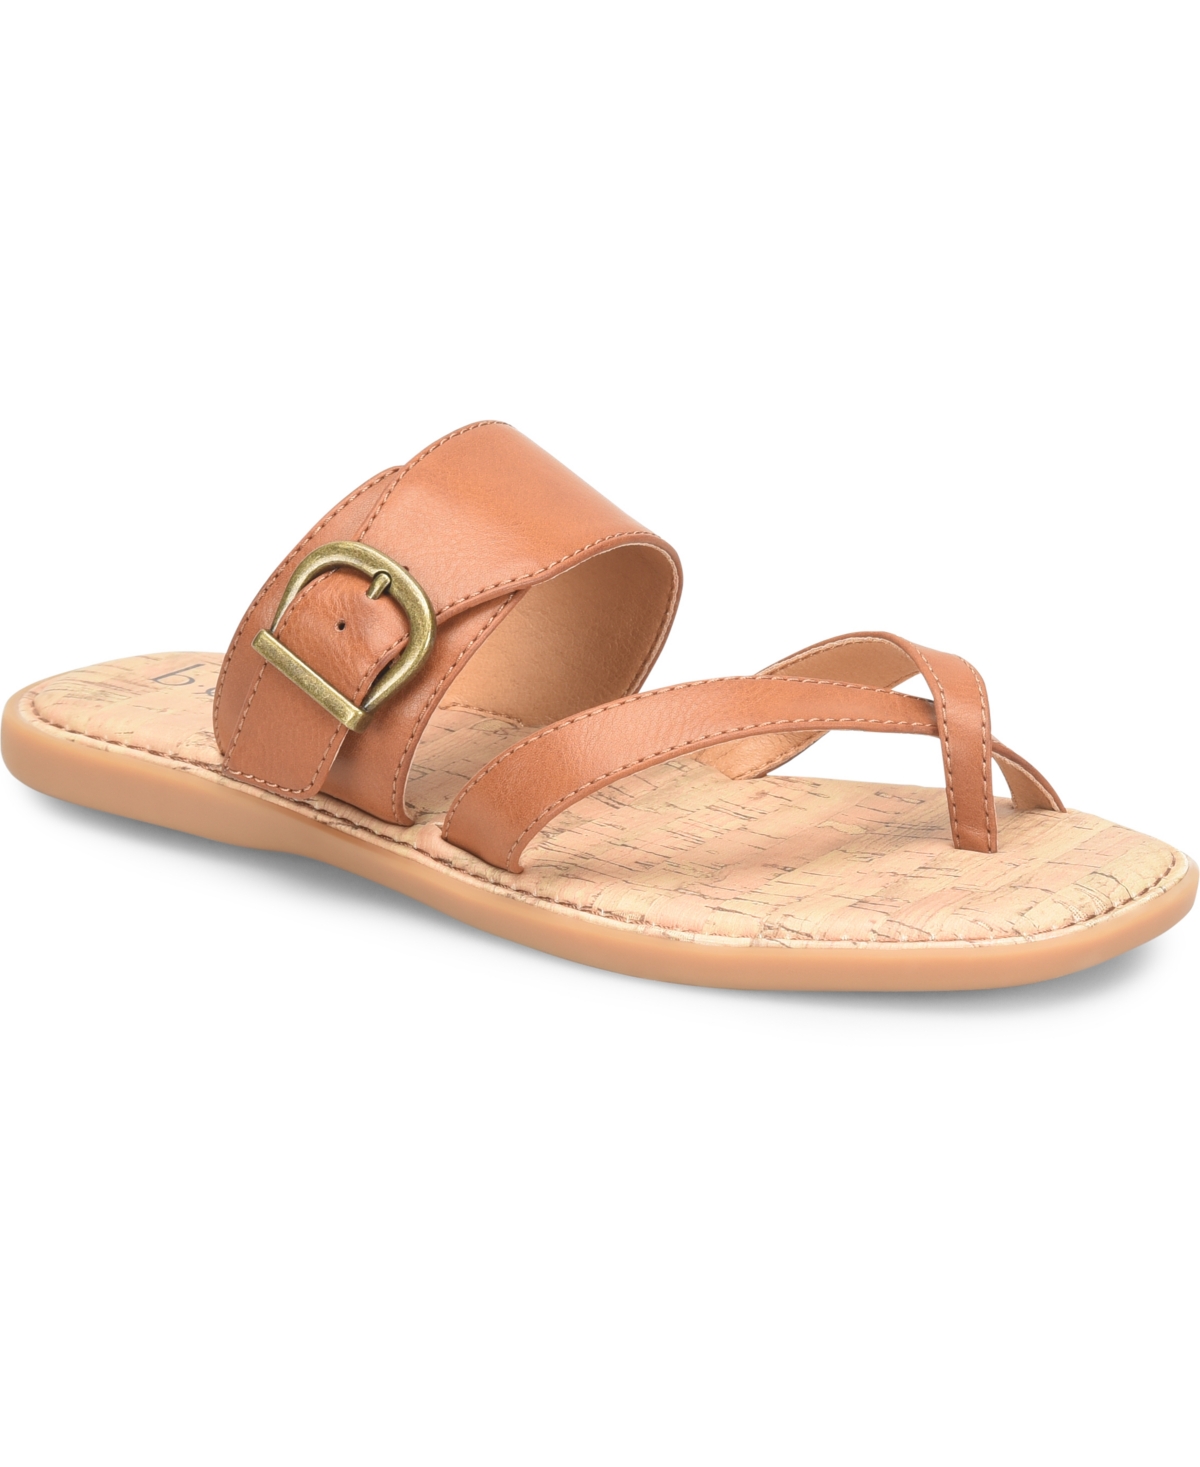 B.o.c. Women's Kelsee Comfort Flat Sandal Women's Shoes In Tan